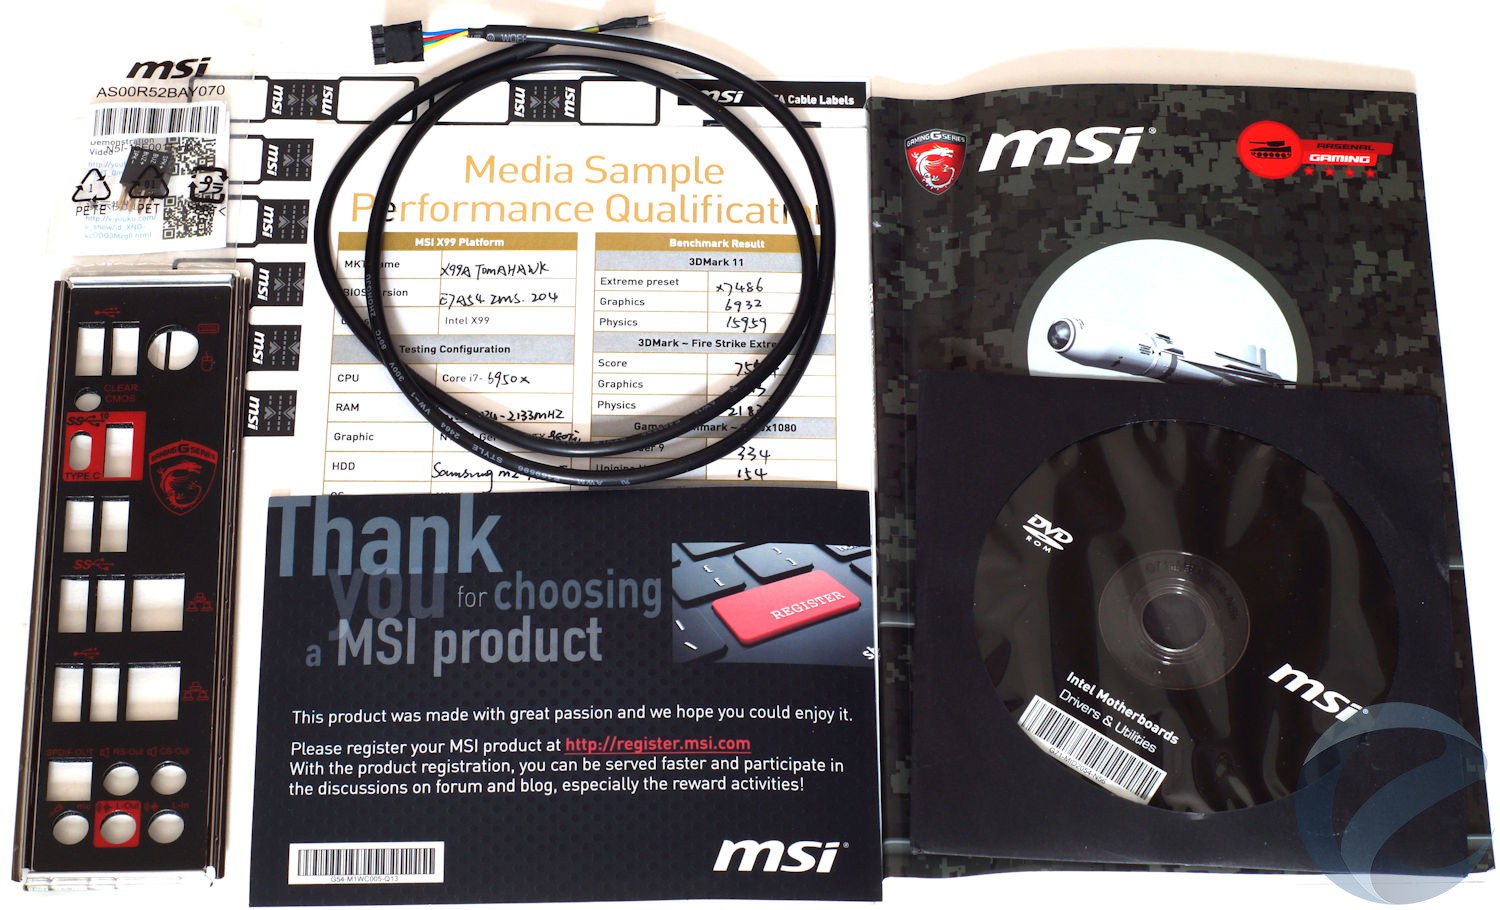 Упаковка и комплектация материнской платы MSI X99A TOMAHAWK